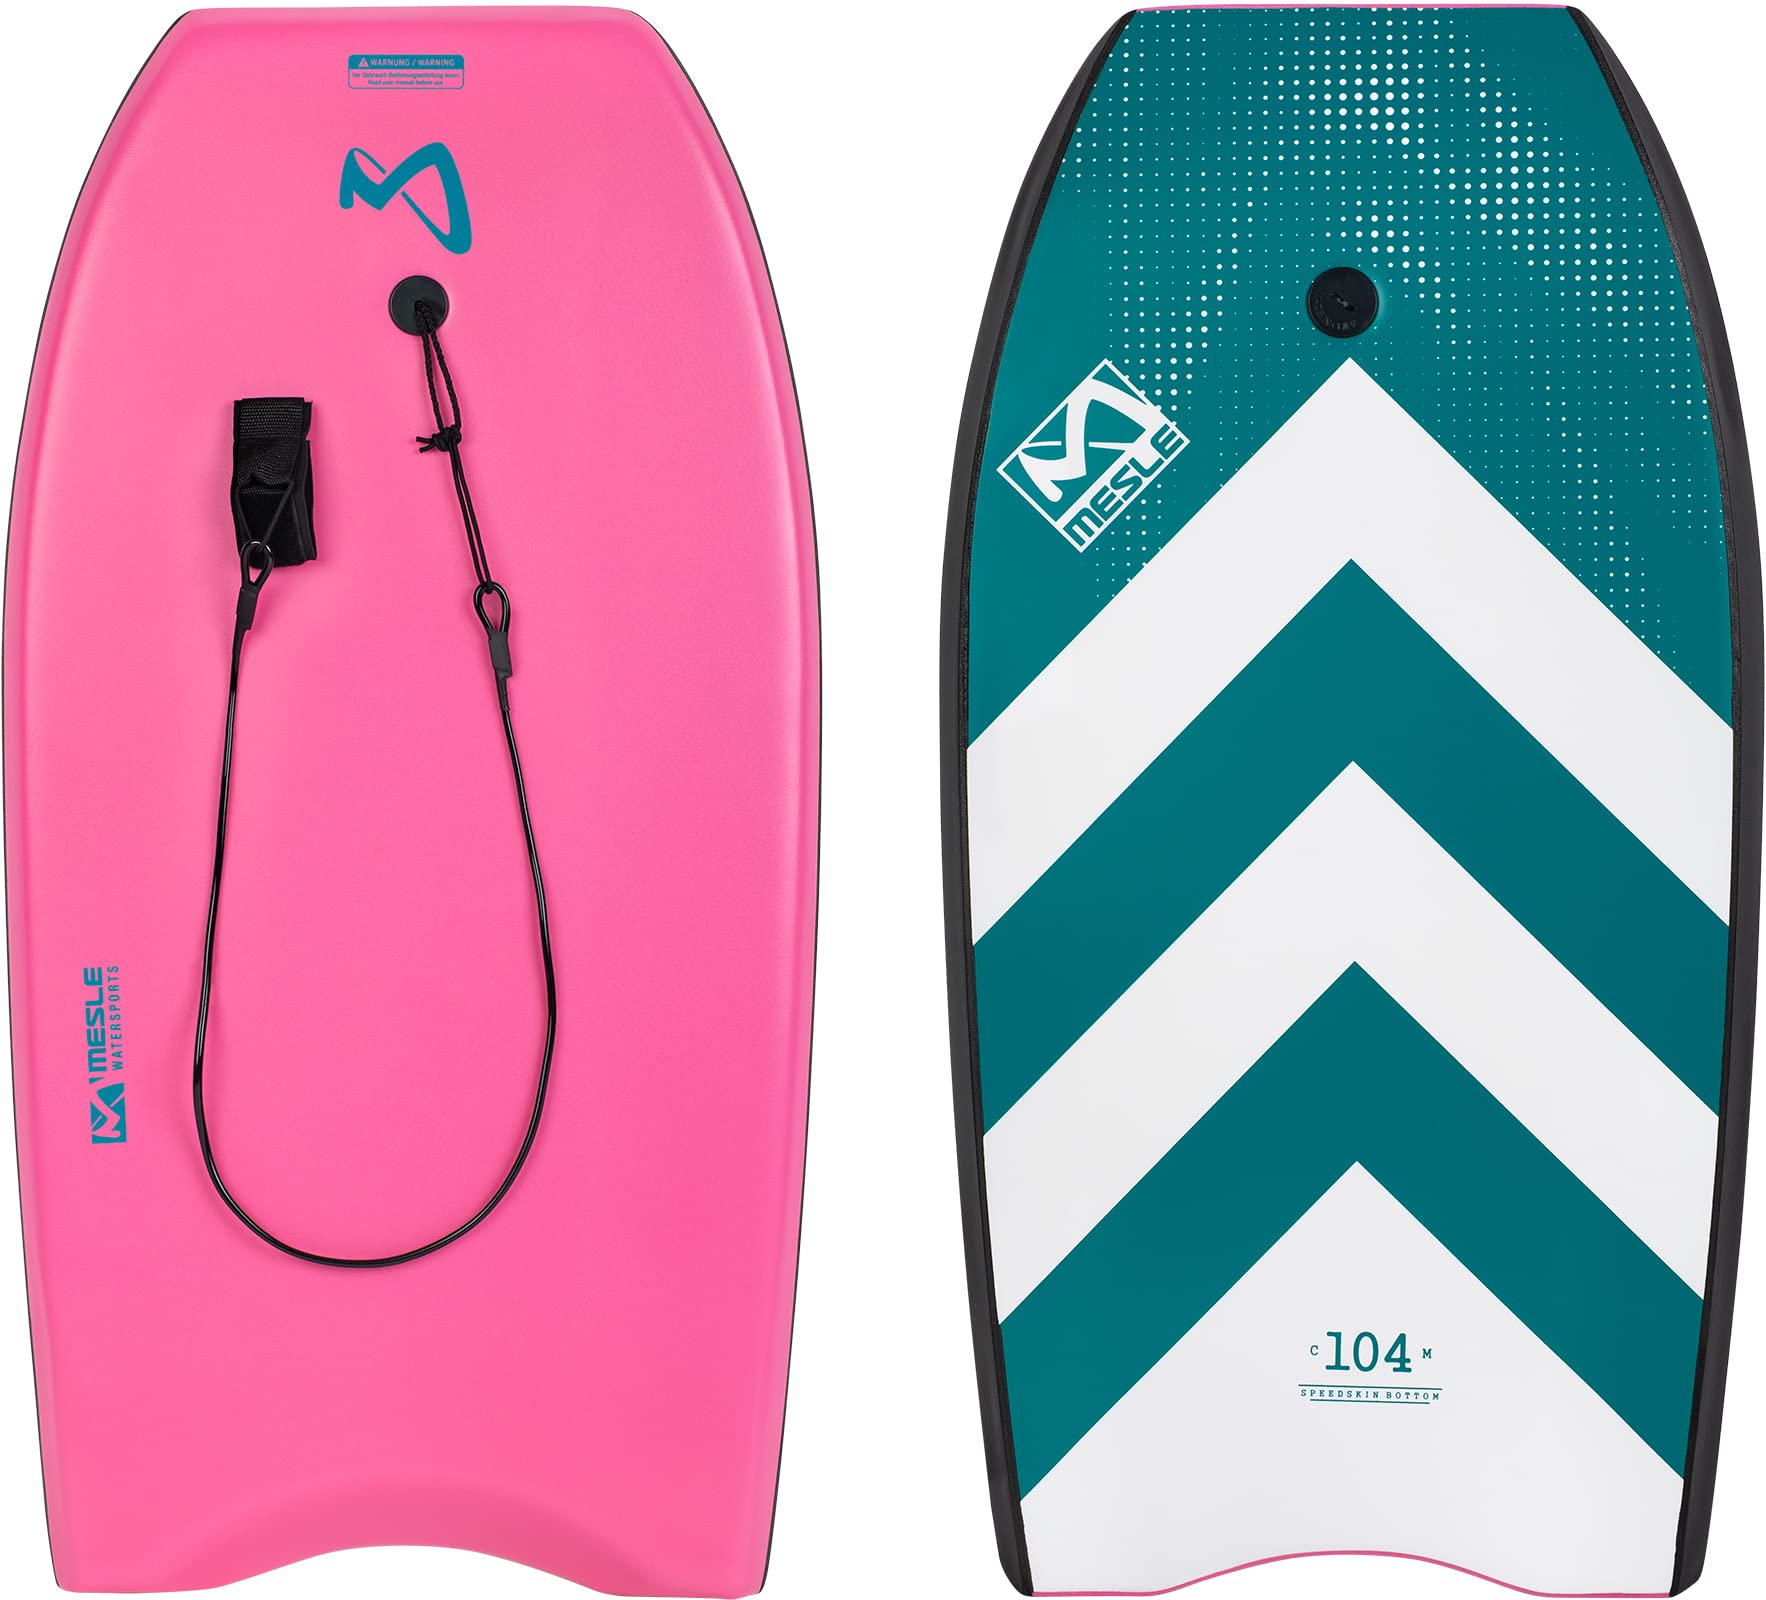 Mesle Bodyboard Speed Skin, für Kinder & Erwachsene bis 100 kg, großes Schwimmbrett zum Surfen & Wellenreiten am Strand, für Anfänger & Fortgeschrittene